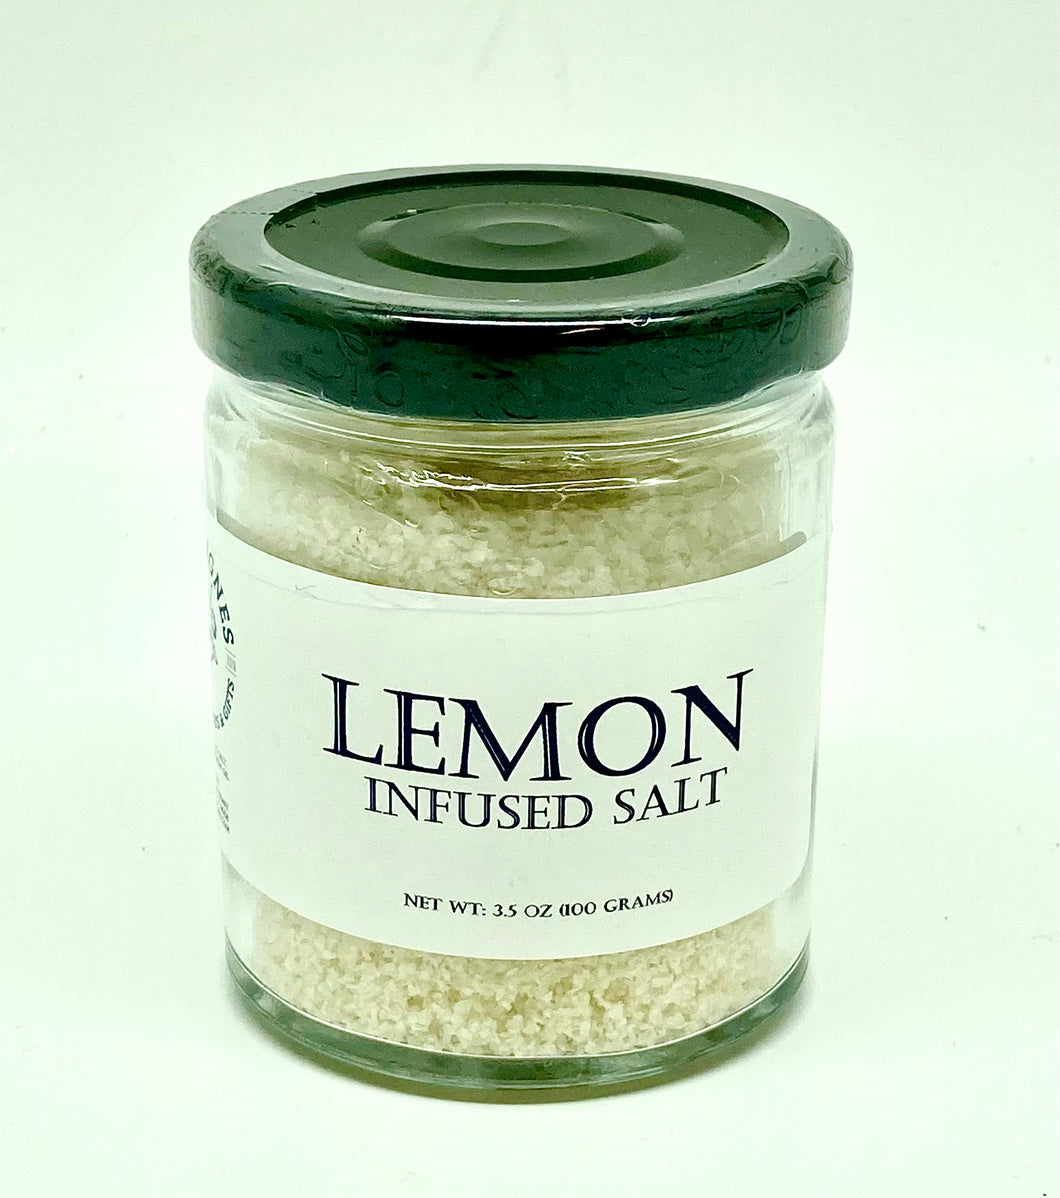 Delavignes Lemon Infused Sea Salt - 3.5oz